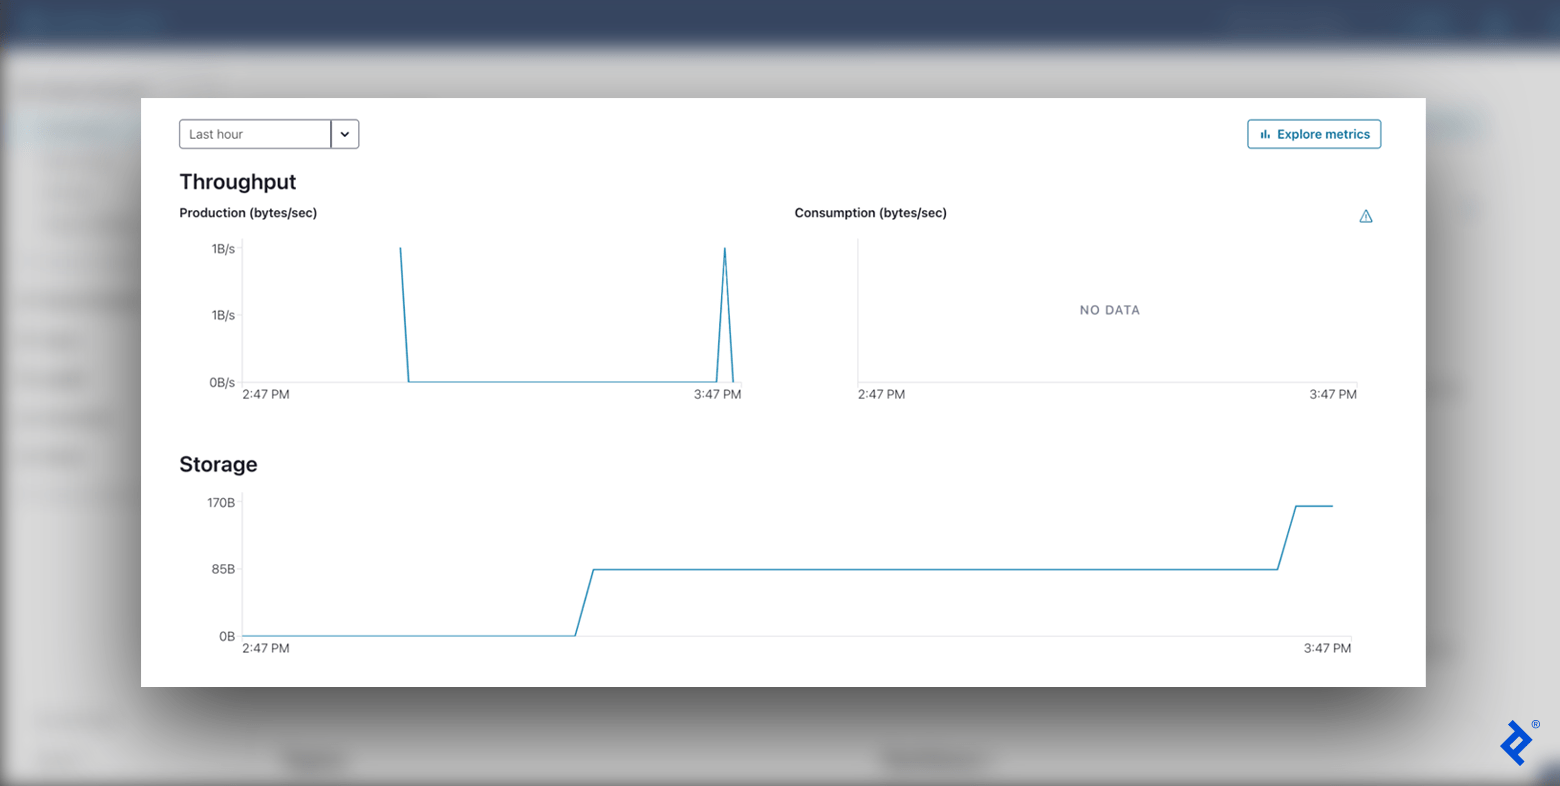 Confluentâs Cluster Overview dashboard: Production shows two spikes, Storage shows two steps (with horizontal lines), and Consumption shows no data.